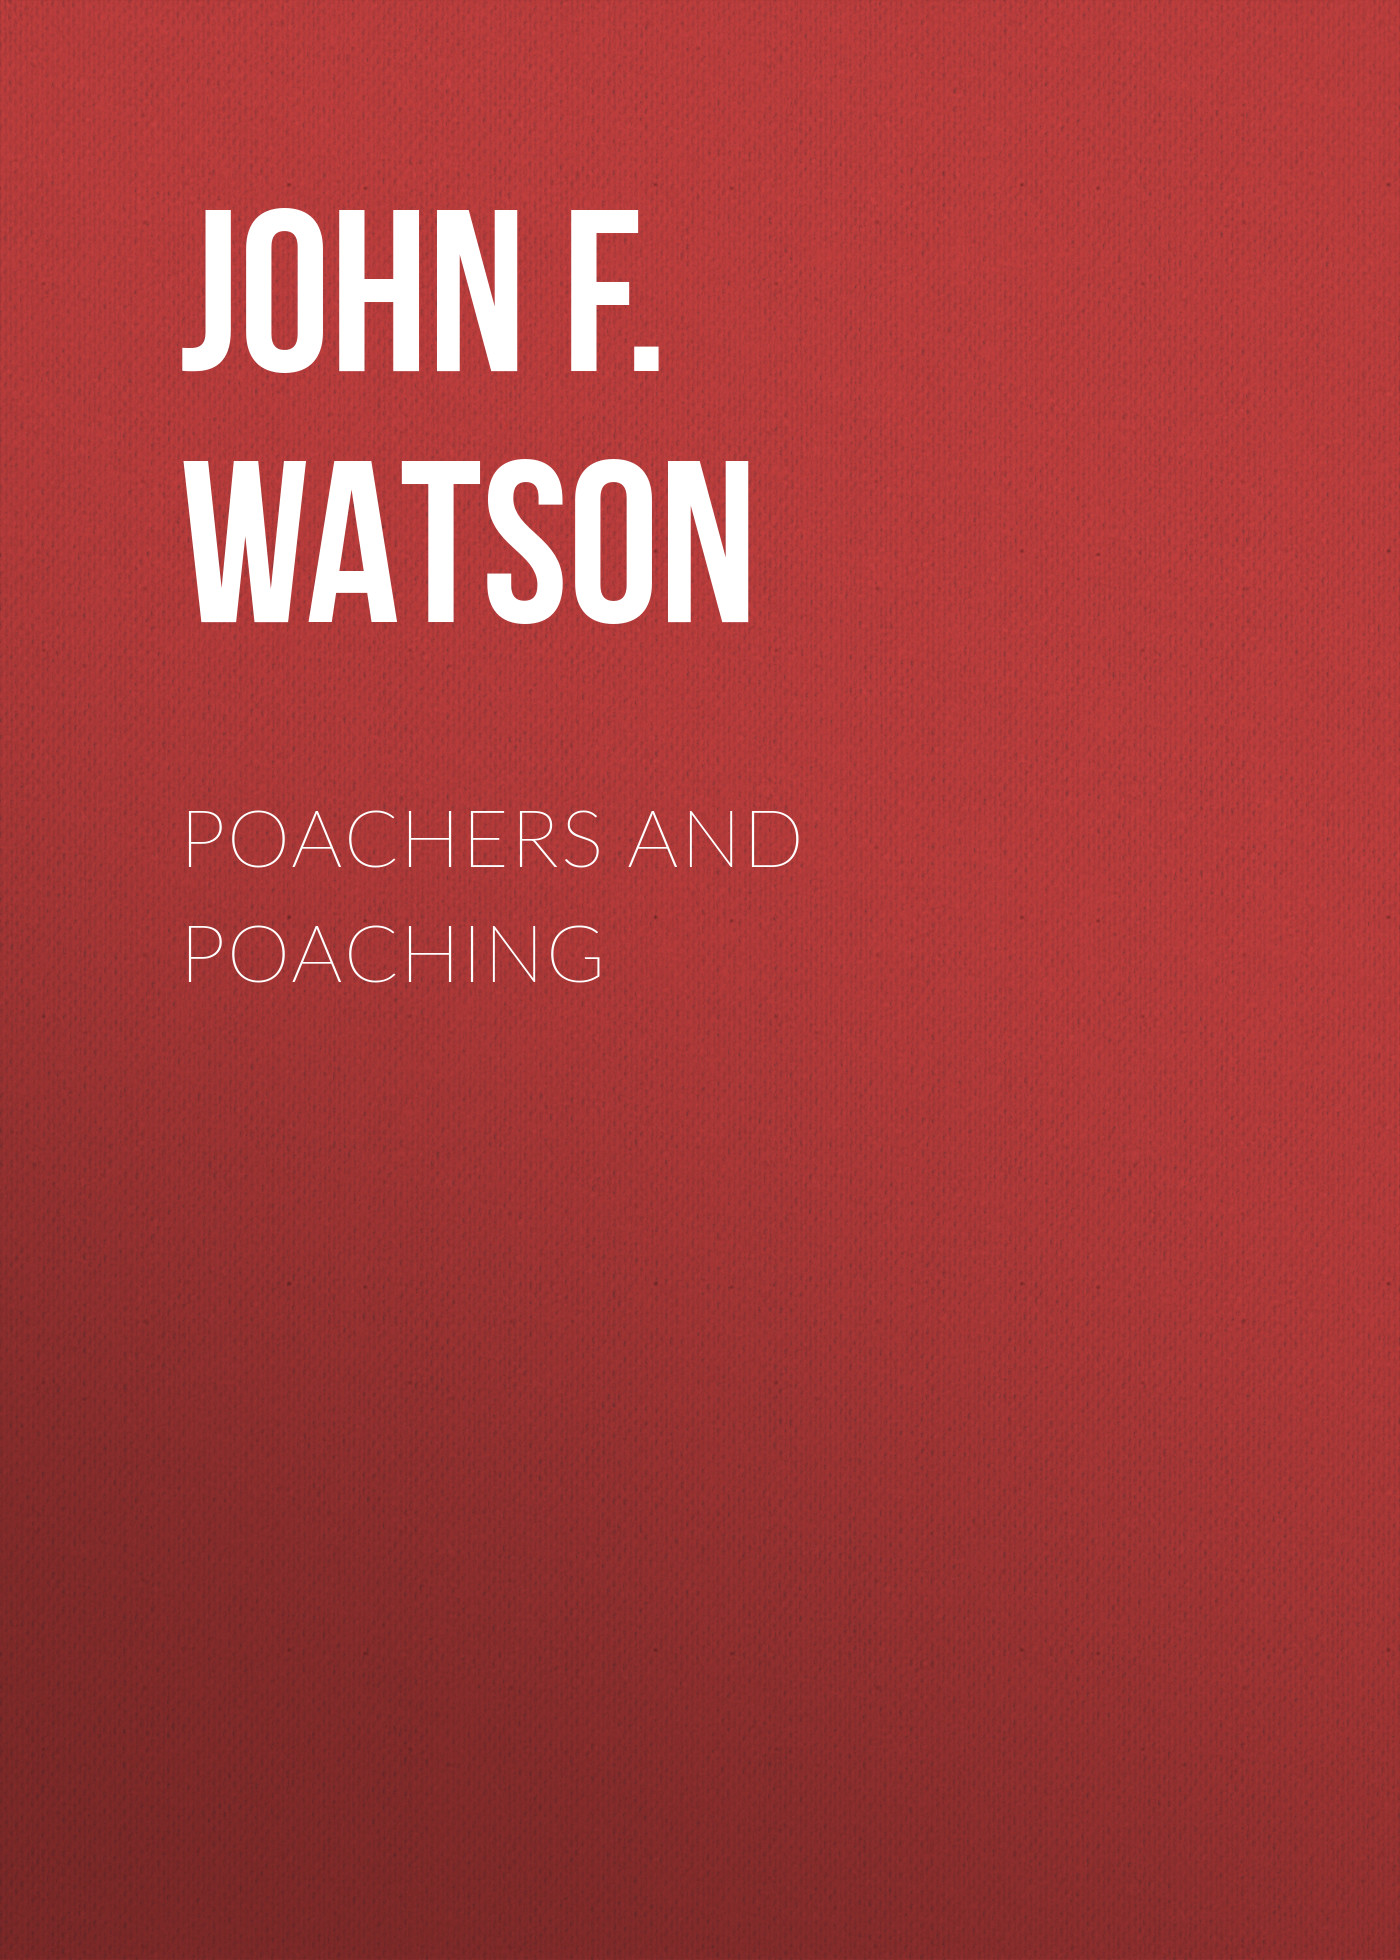 Книга Poachers and Poaching из серии , созданная John F.L.S. Watson, может относится к жанру Зарубежная классика, Биология. Стоимость книги Poachers and Poaching  с идентификатором 34336722 составляет 0 руб.